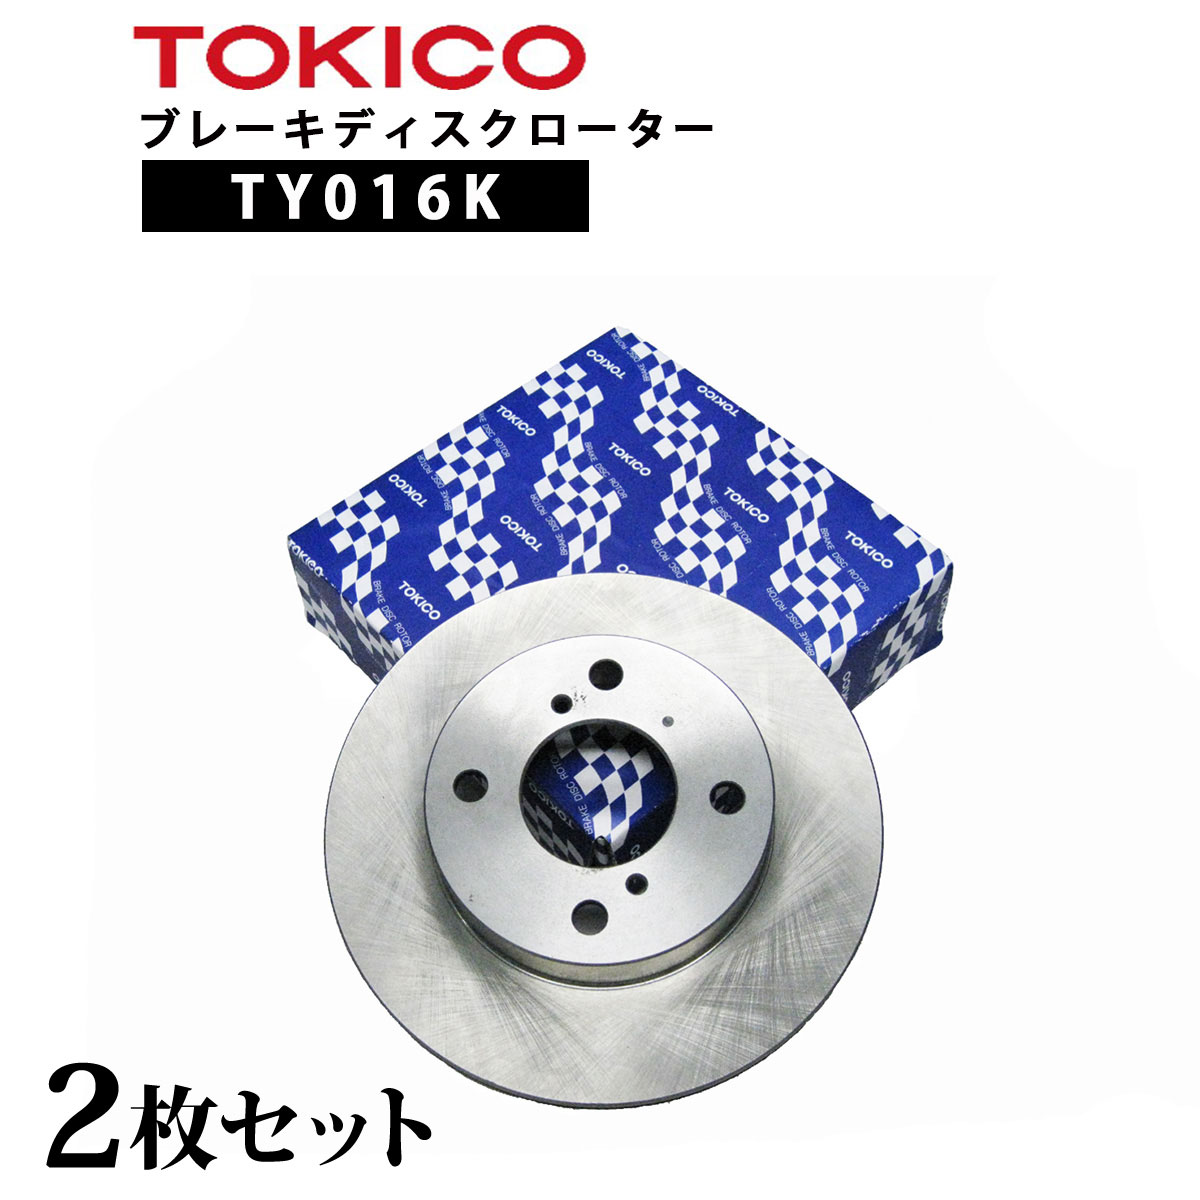 TY016K TOKICO ブレーキディスクローター フロント 2枚 左右セット トキコ 日立| 適合 純正 ダイハツ 43512-B1040 ミラジーノ F L250S,L260S,L285S 他社 RD104 E0001 D6-010B G6F353J